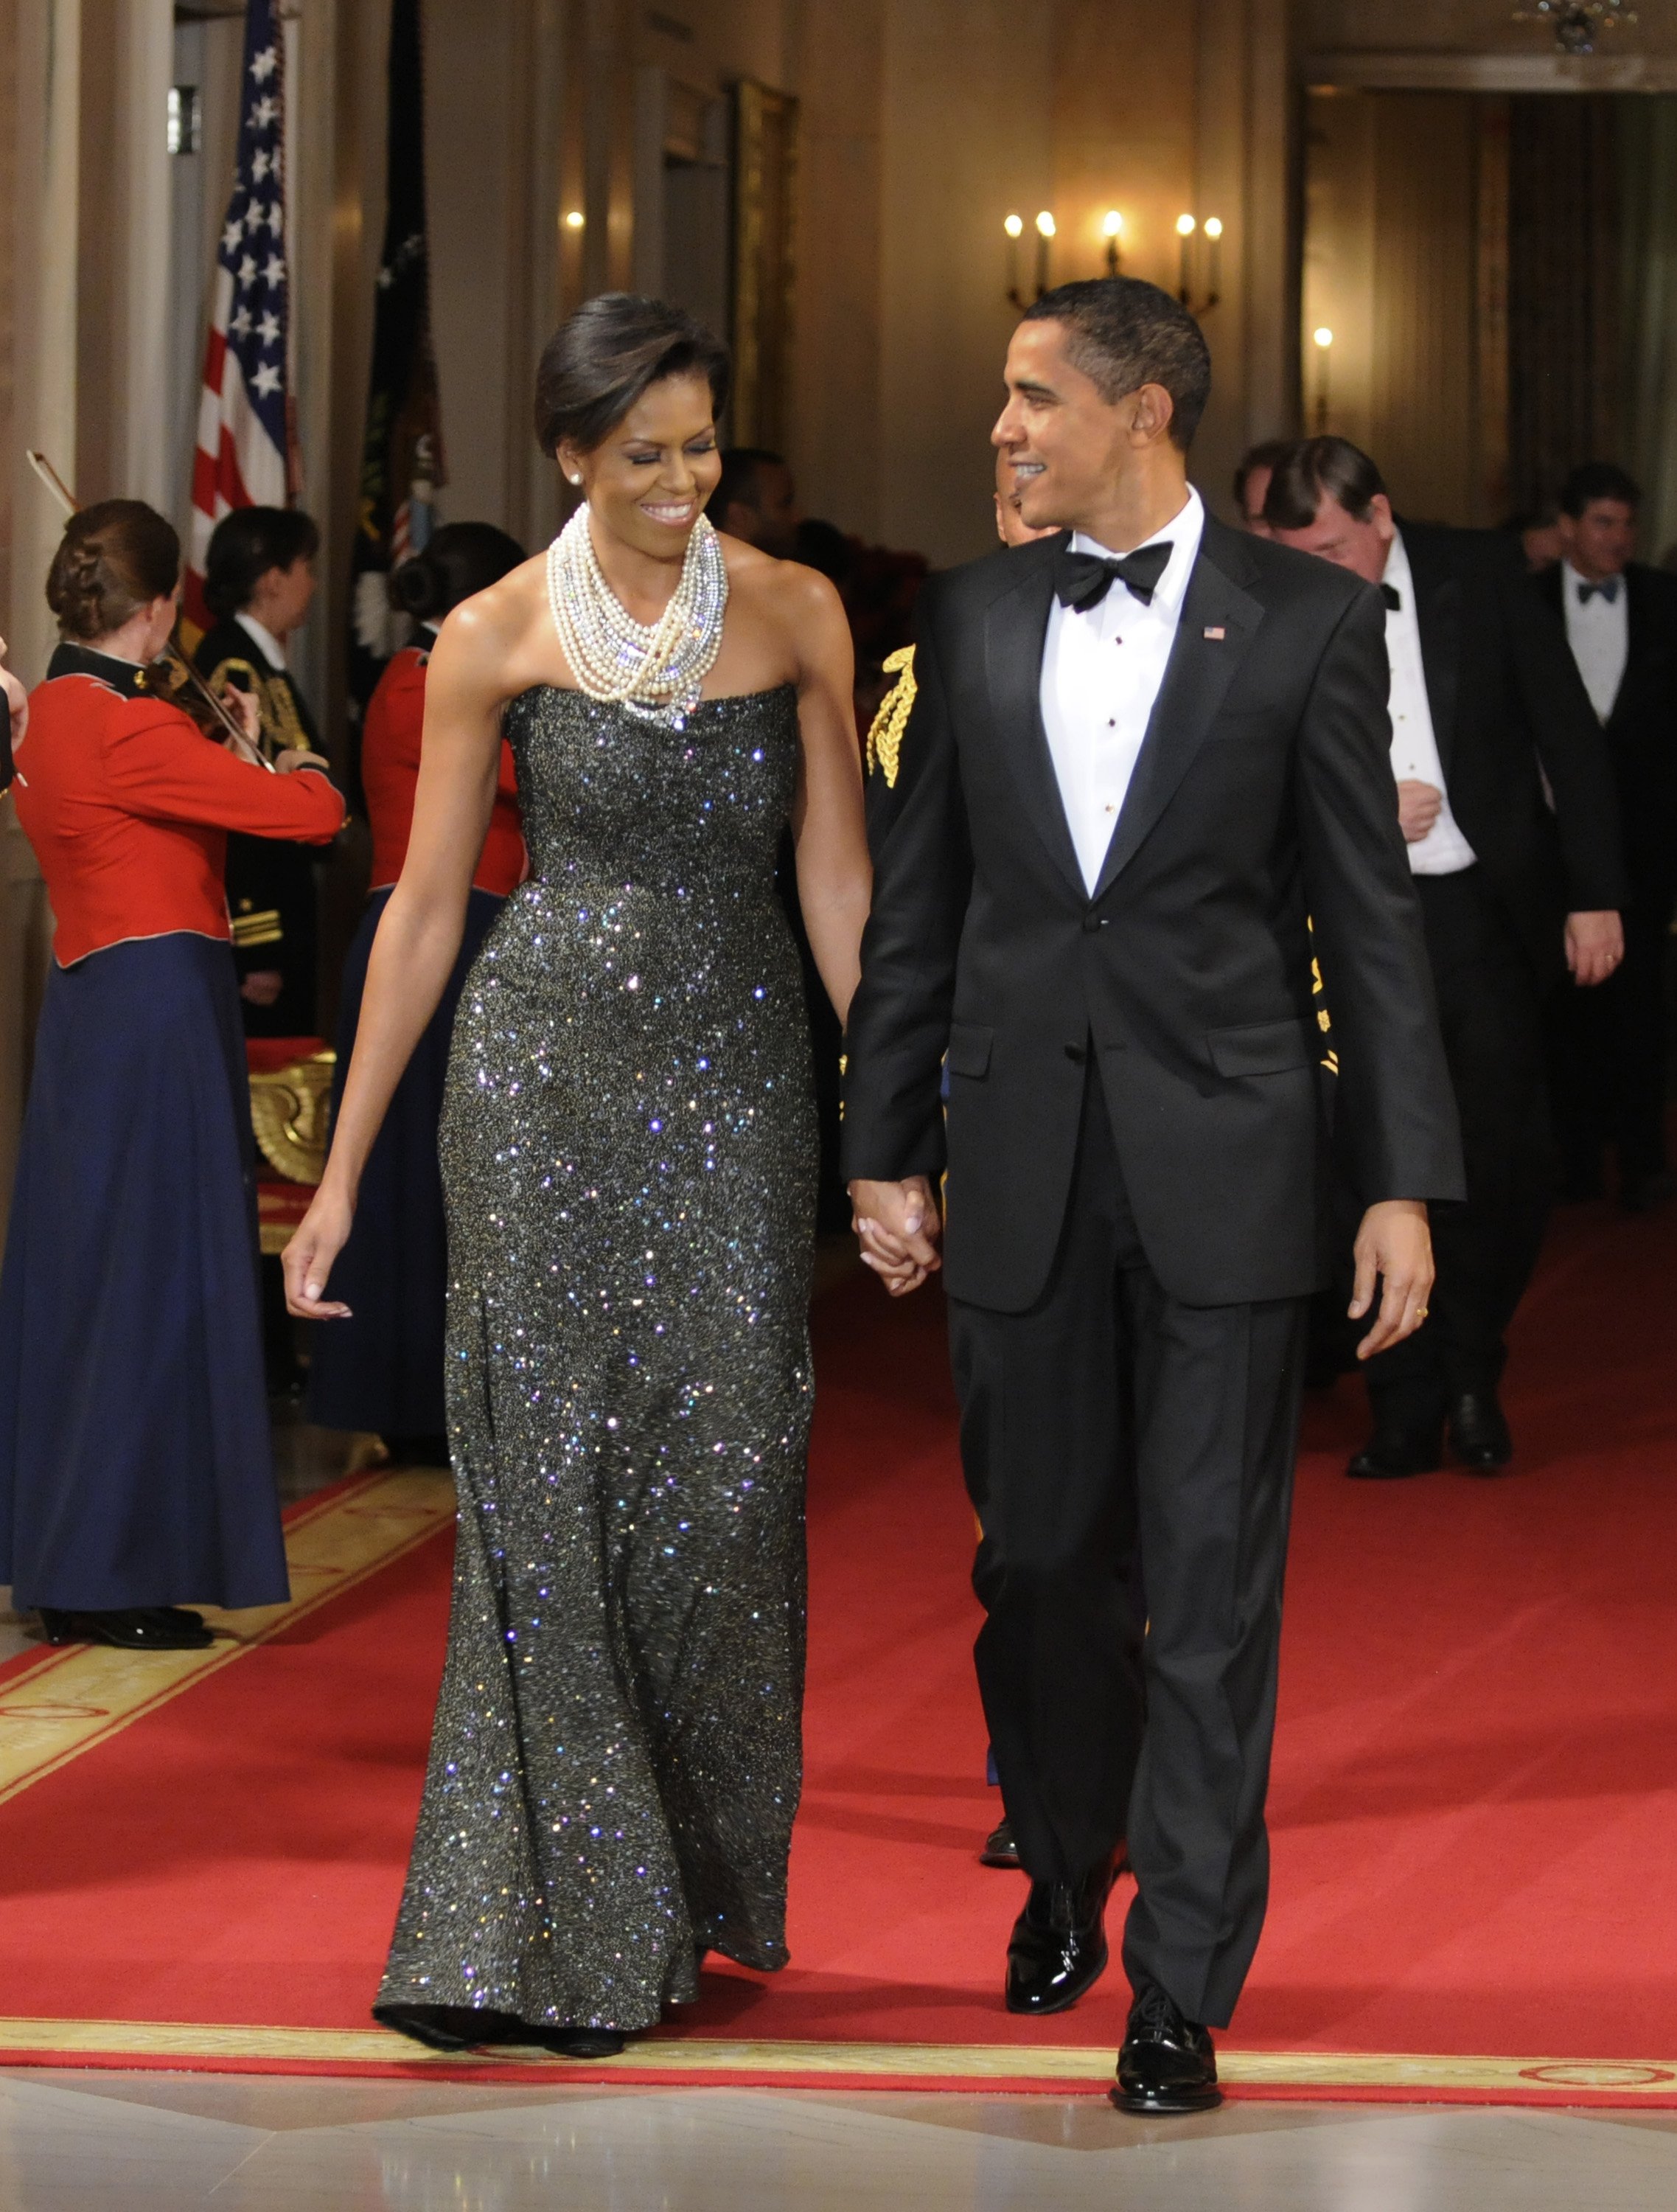 El presidente Barack Obama y la primera dama Michelle Obama en el East Room para entretenerse después de una cena de gala en la Casa Blanca, el 22 de febrero de 2009 en Washington, DC. | Foto: Getty Images